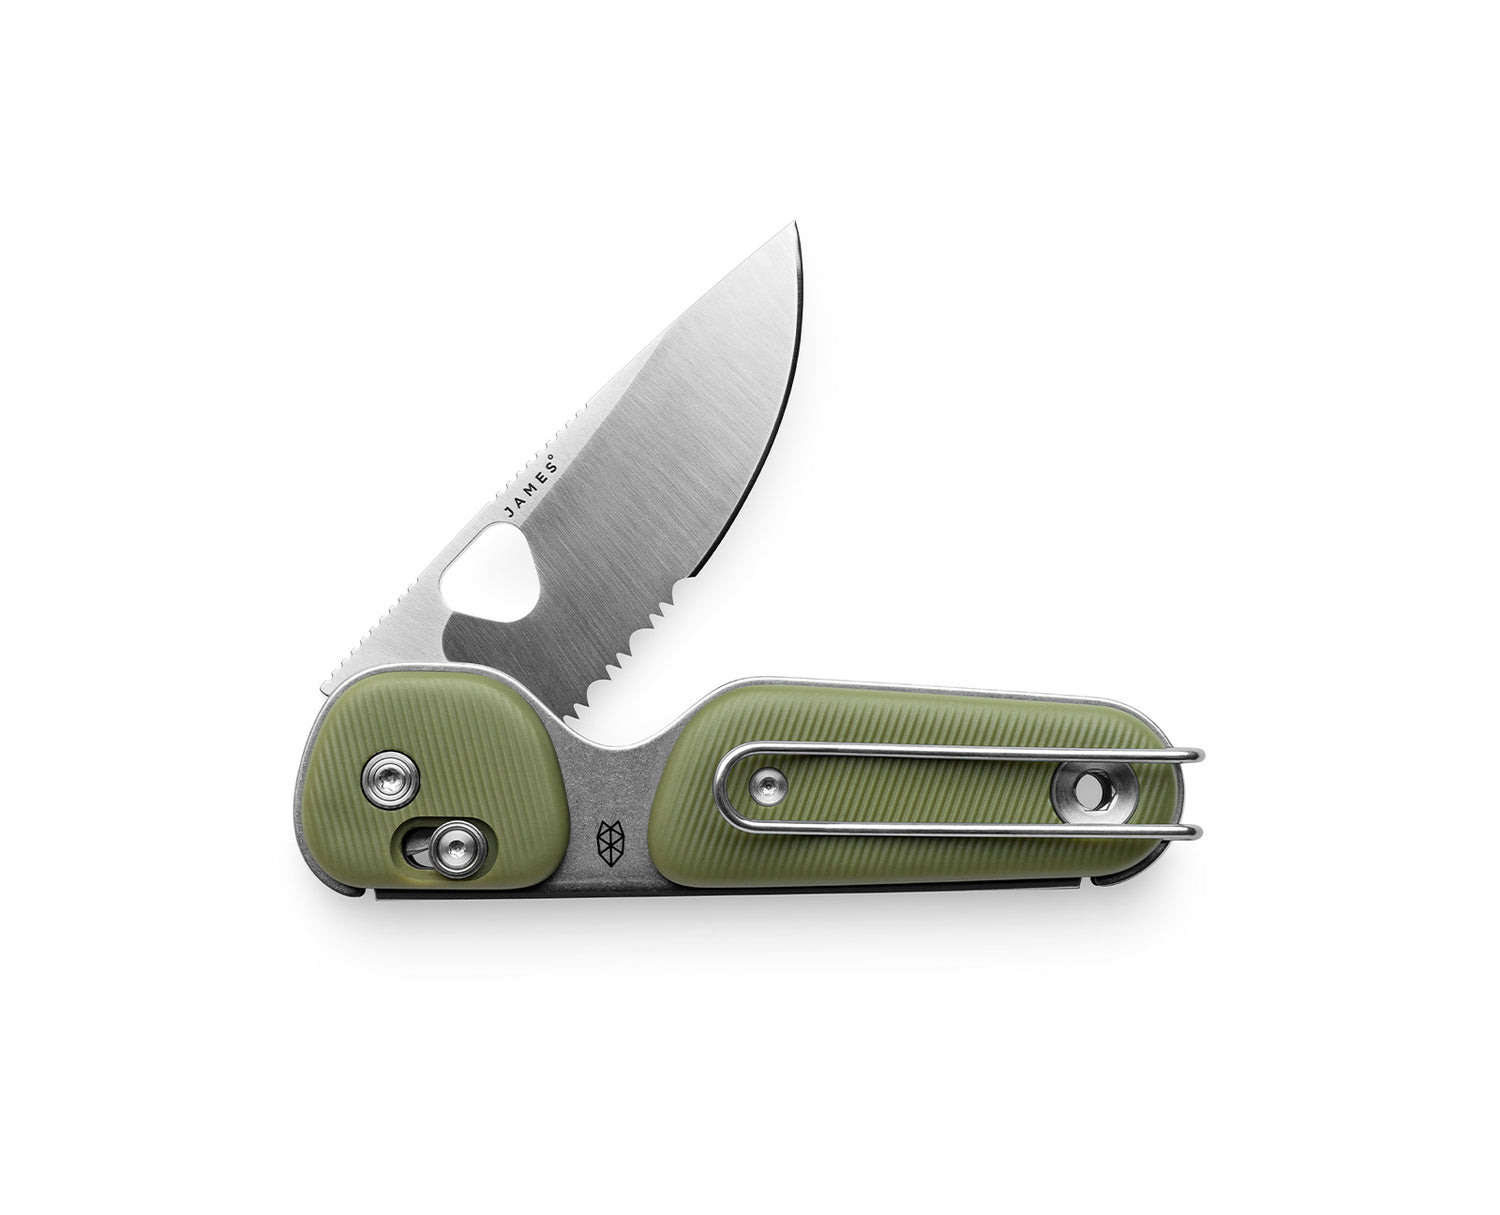  2 PACK Pocket Folding Knife, Tactical Knife, Super